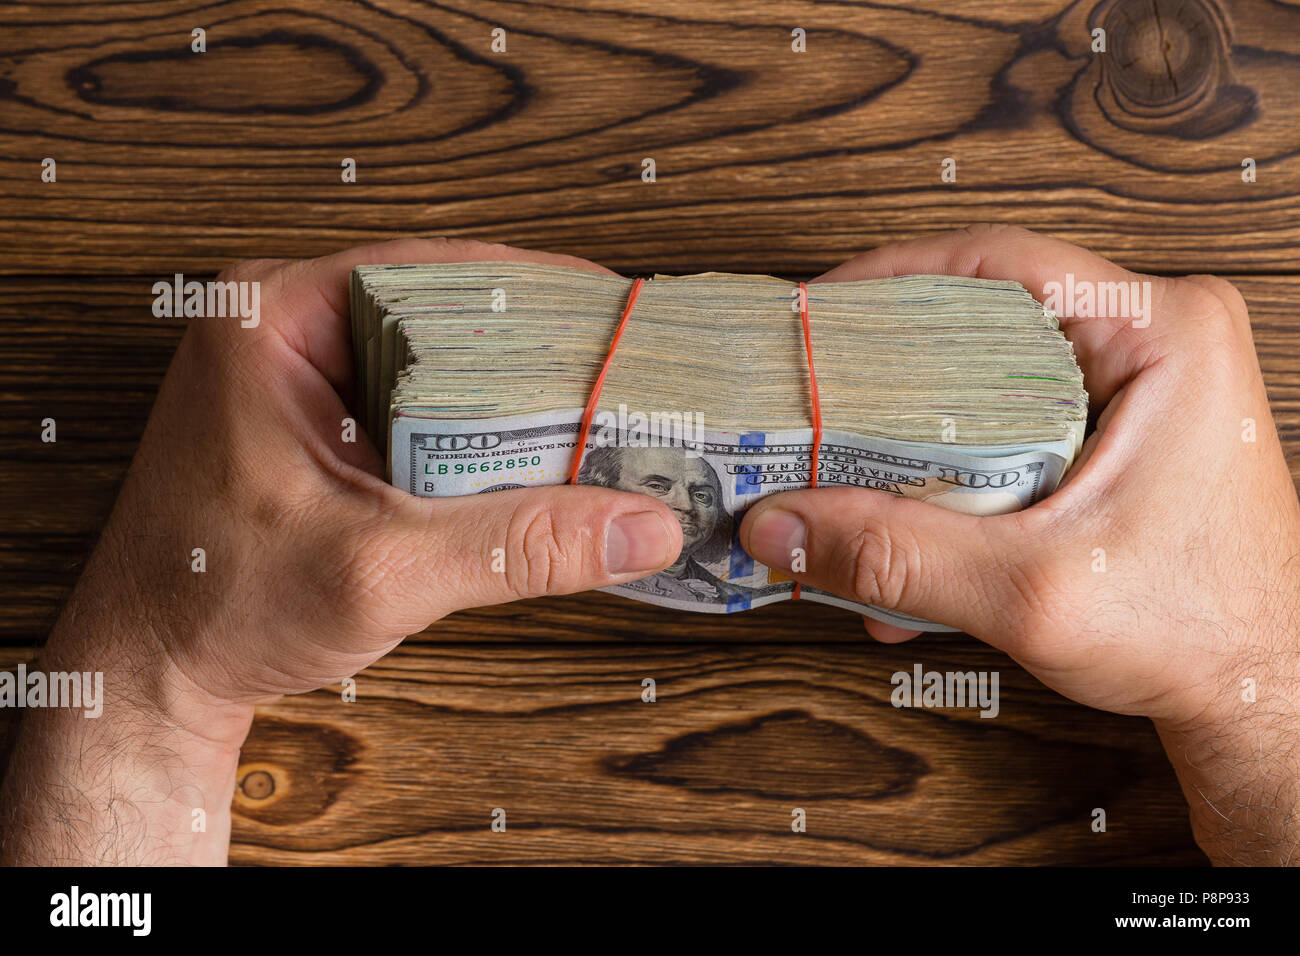 La préhension de l'homme une épaisse pile de 100 dollar bills ou Benjies fermement entre ses doigts sur une table en bois dans un cadre conceptuel de droit généraux Banque D'Images